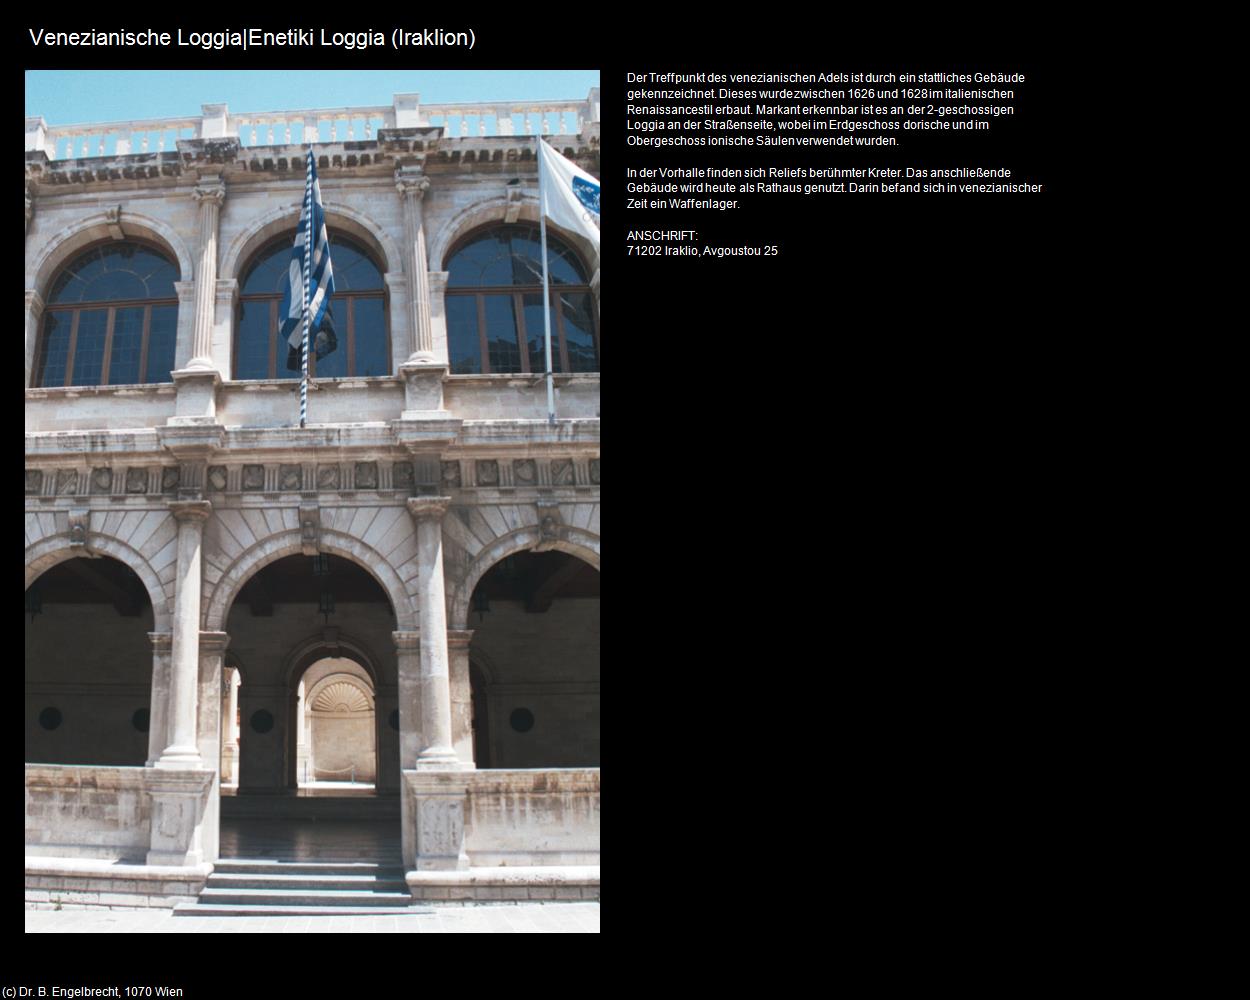 Venezianische Loggia (Iraklion) in KRETA und SANTORIN